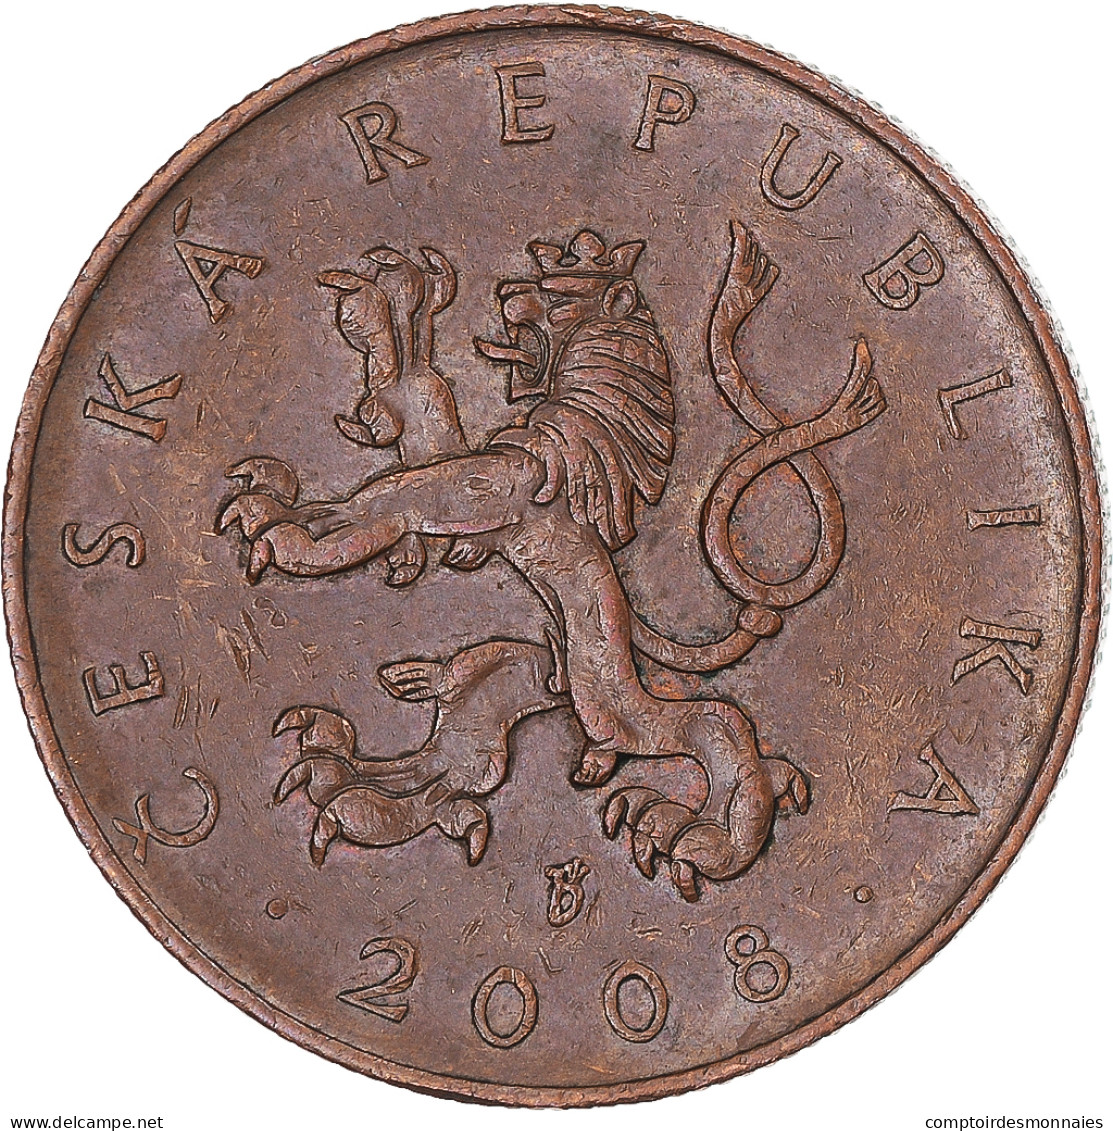 Monnaie, République Tchèque, 10 Korun, 2008, SUP, Cuivre Plaqué Acier, KM:4 - Czech Republic